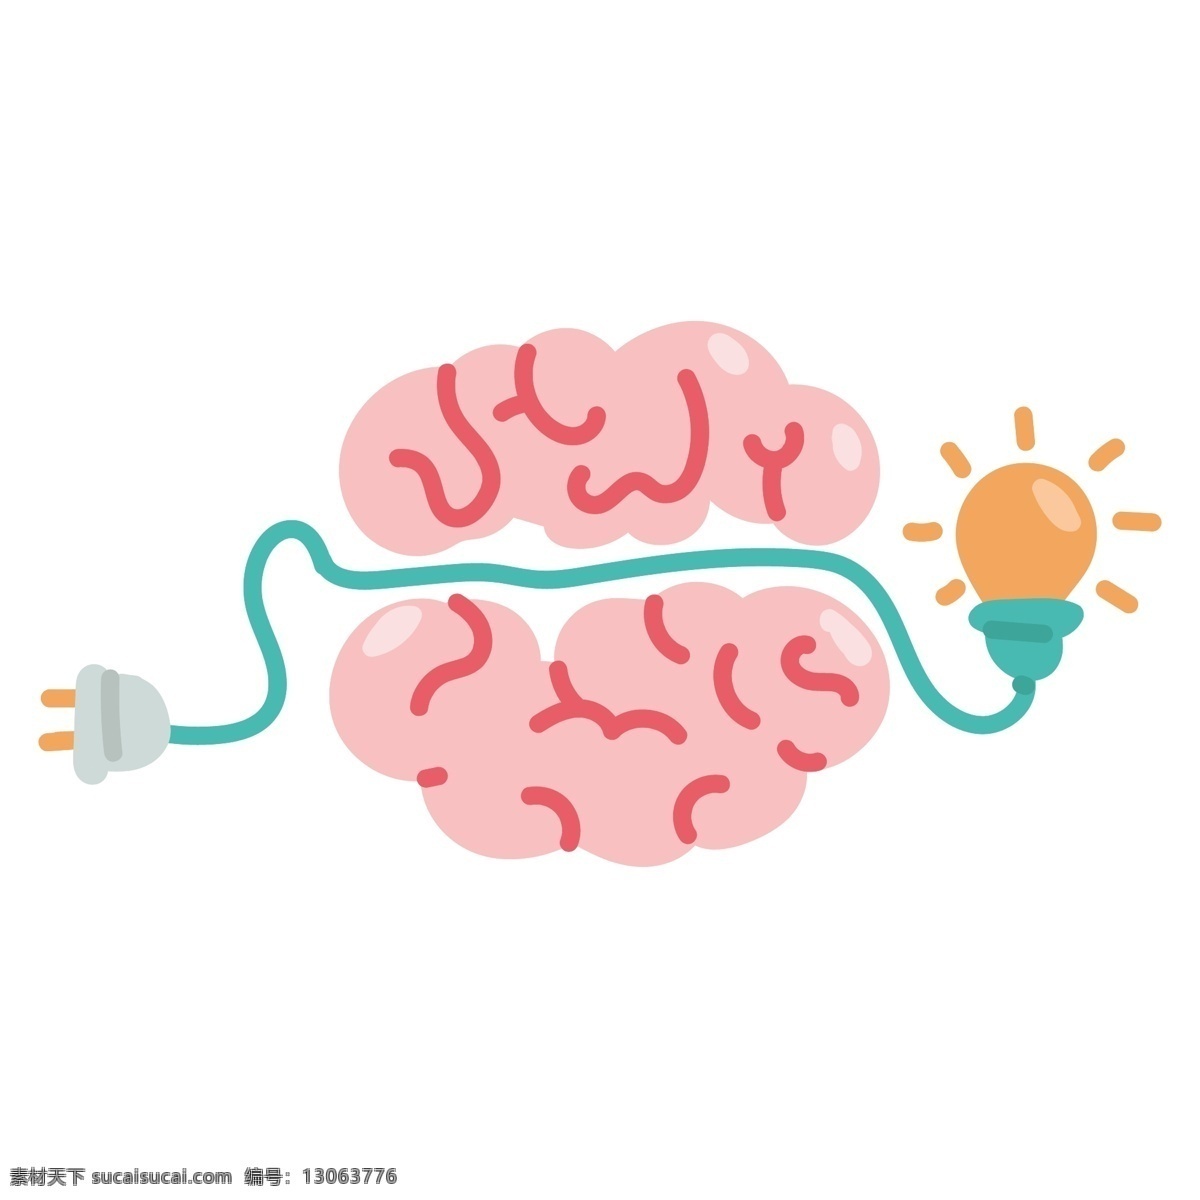 卡通 粉色 大脑 矢量 粉色大脑 卡通大脑 可爱 可爱大脑 创意 创意大脑 创意的 想法创意